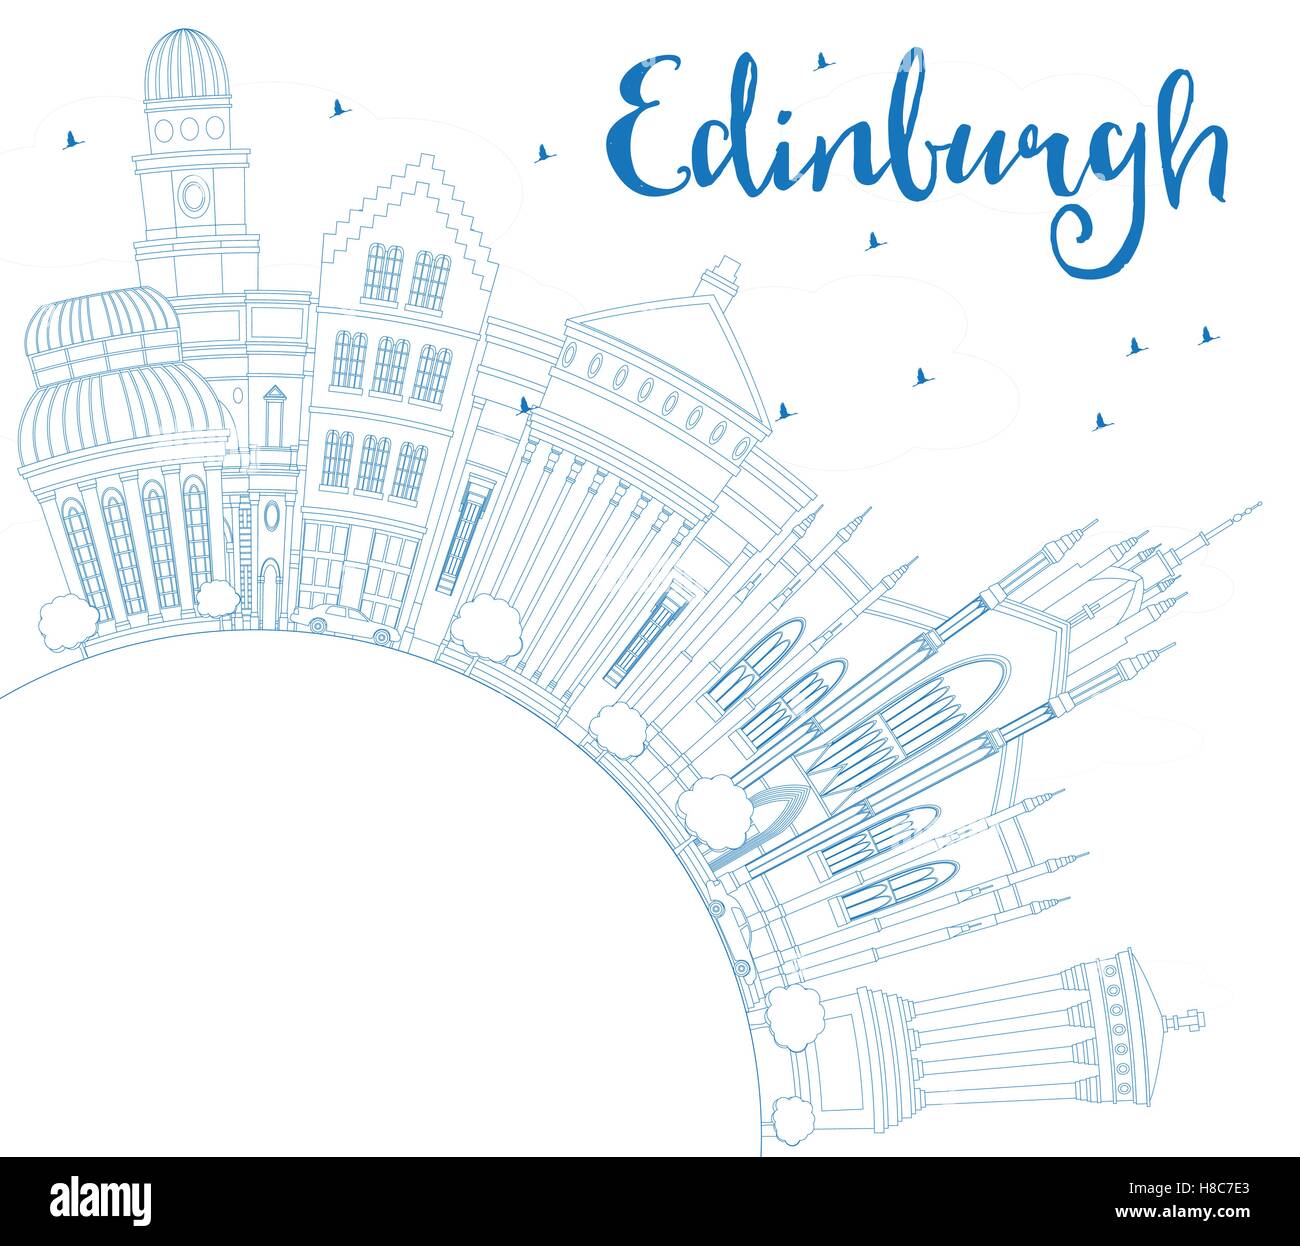 Umriss Edinburgh mit blauen Gebäuden und textfreiraum Skyline. Vektor-Illustration. Geschäftsreisen und Tourismus-Konzept Stock Vektor